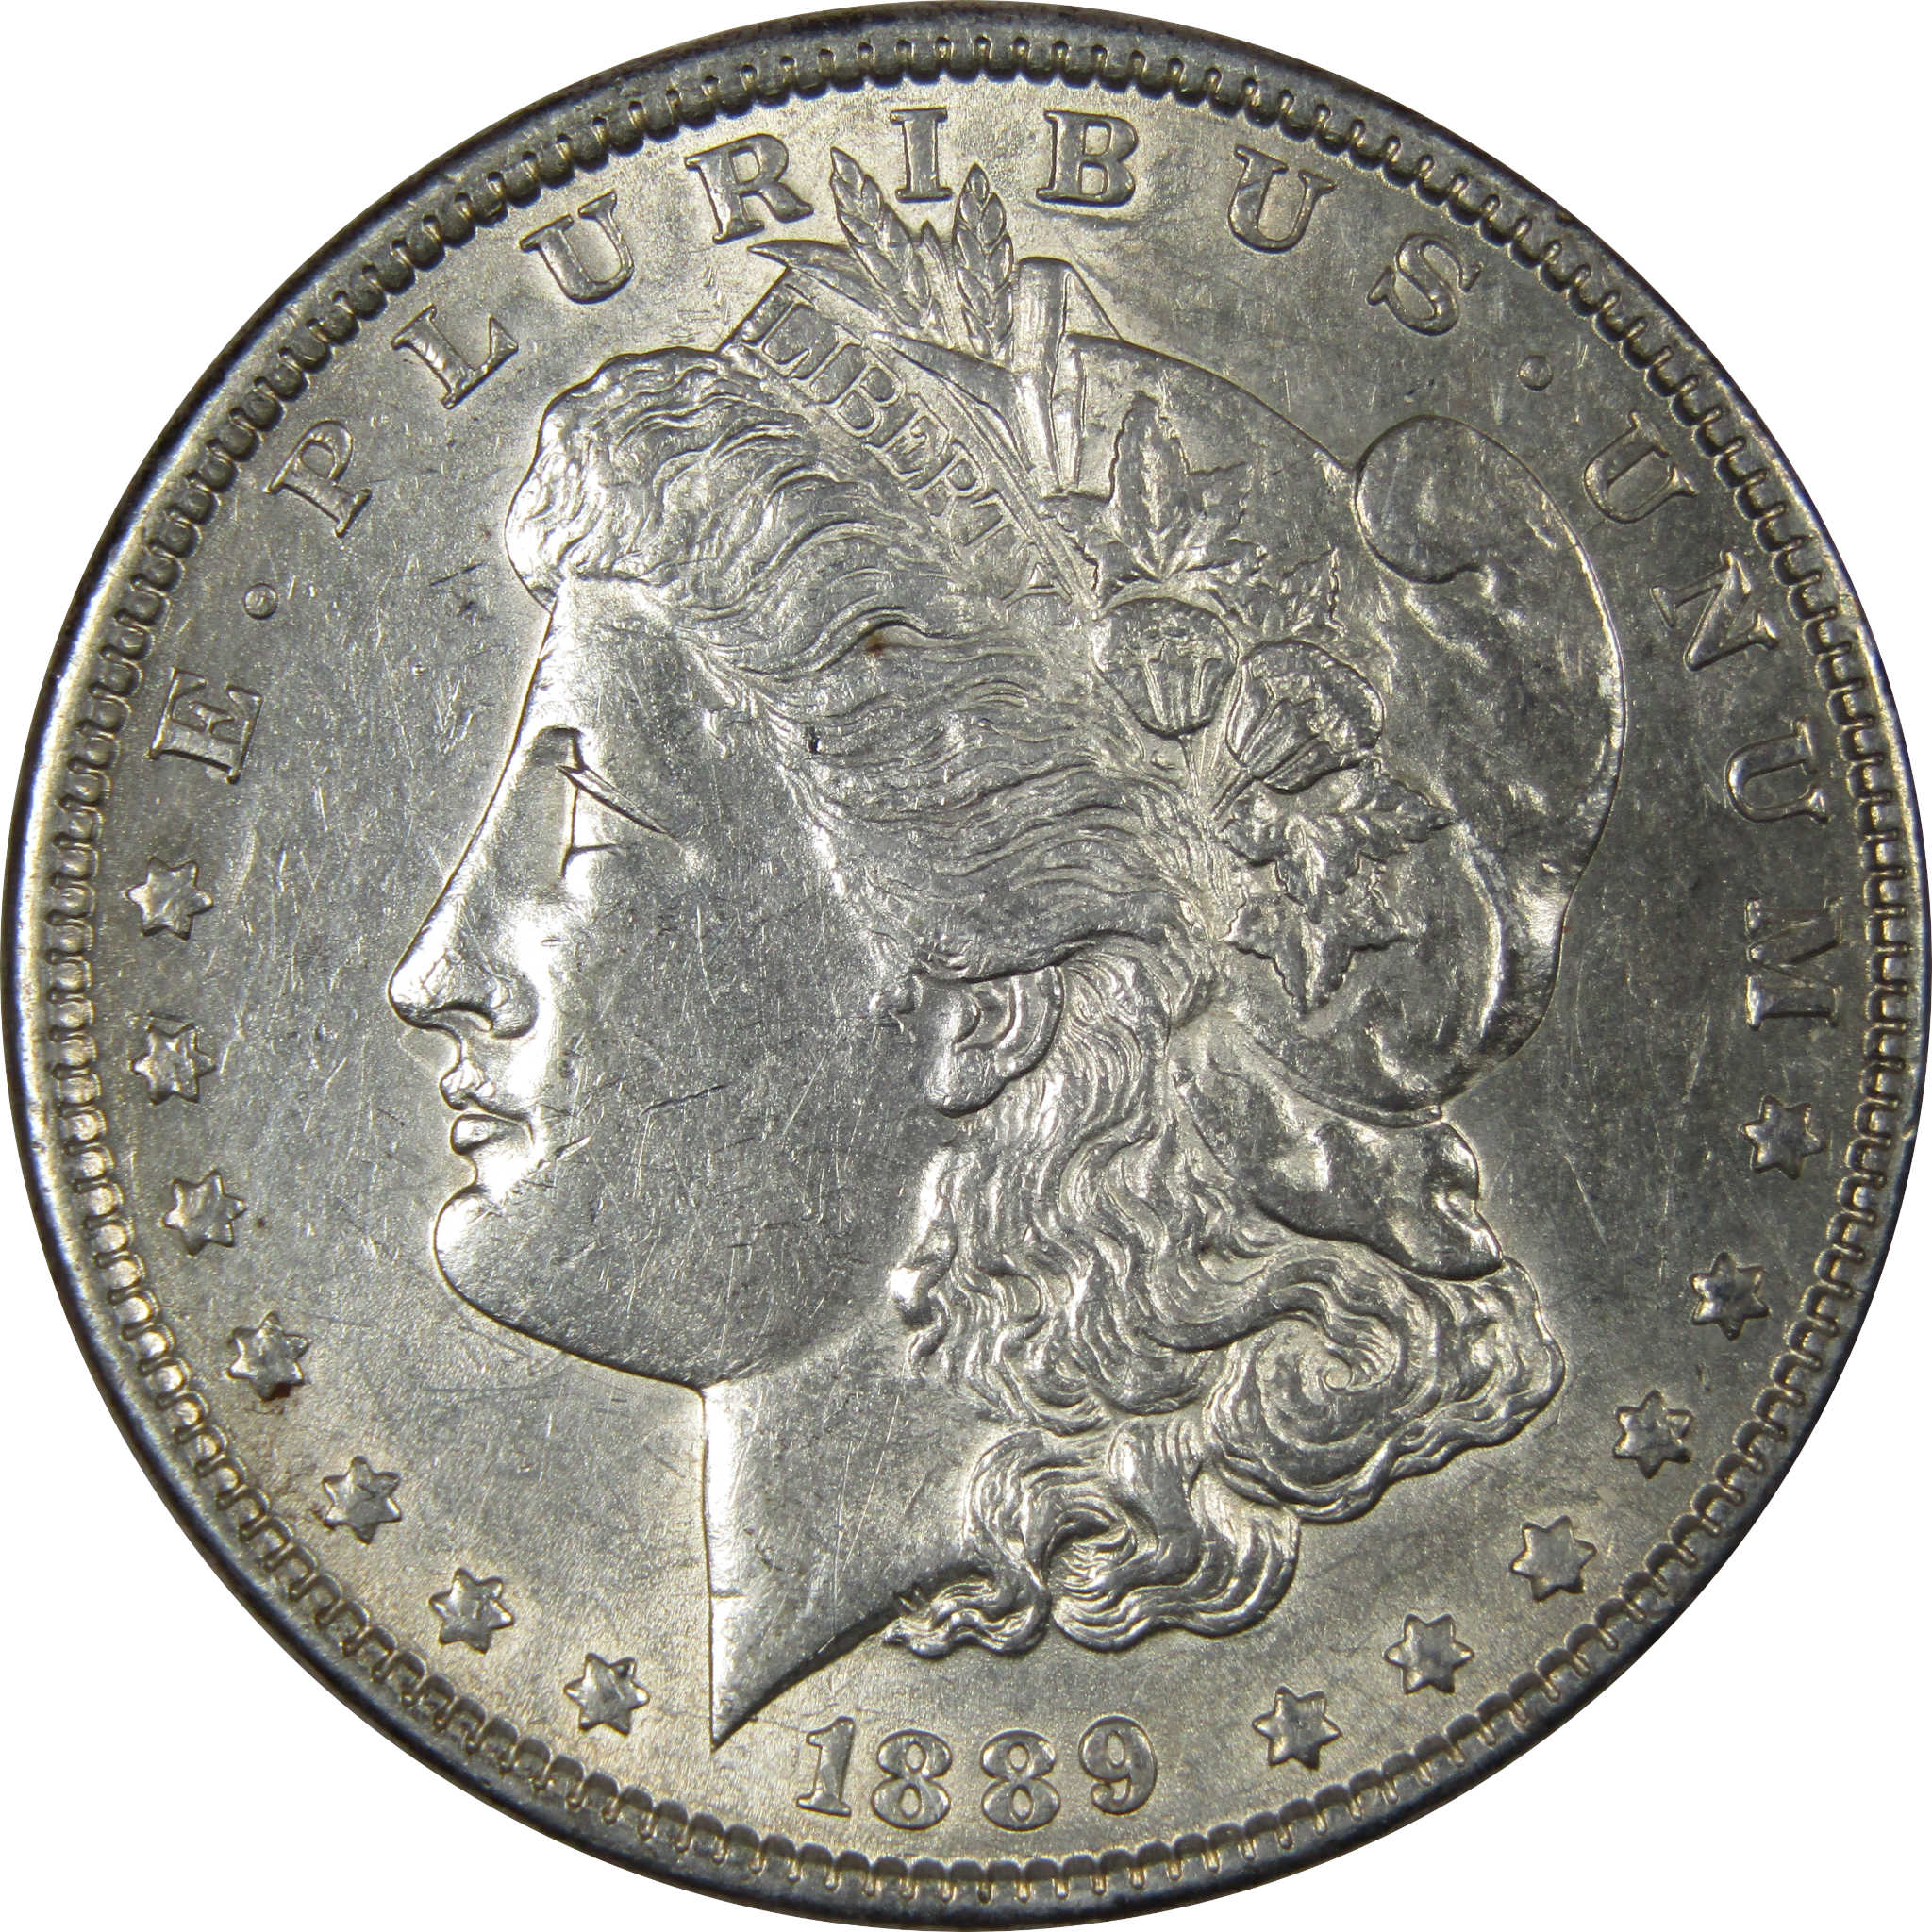 1889 Barwing Morgan Dollar AU About Uncirculated Silver SKU:IPC8434 - Morgan coin - Morgan silver dollar - Morgan silver dollar for sale - Profile Coins &amp; Collectibles